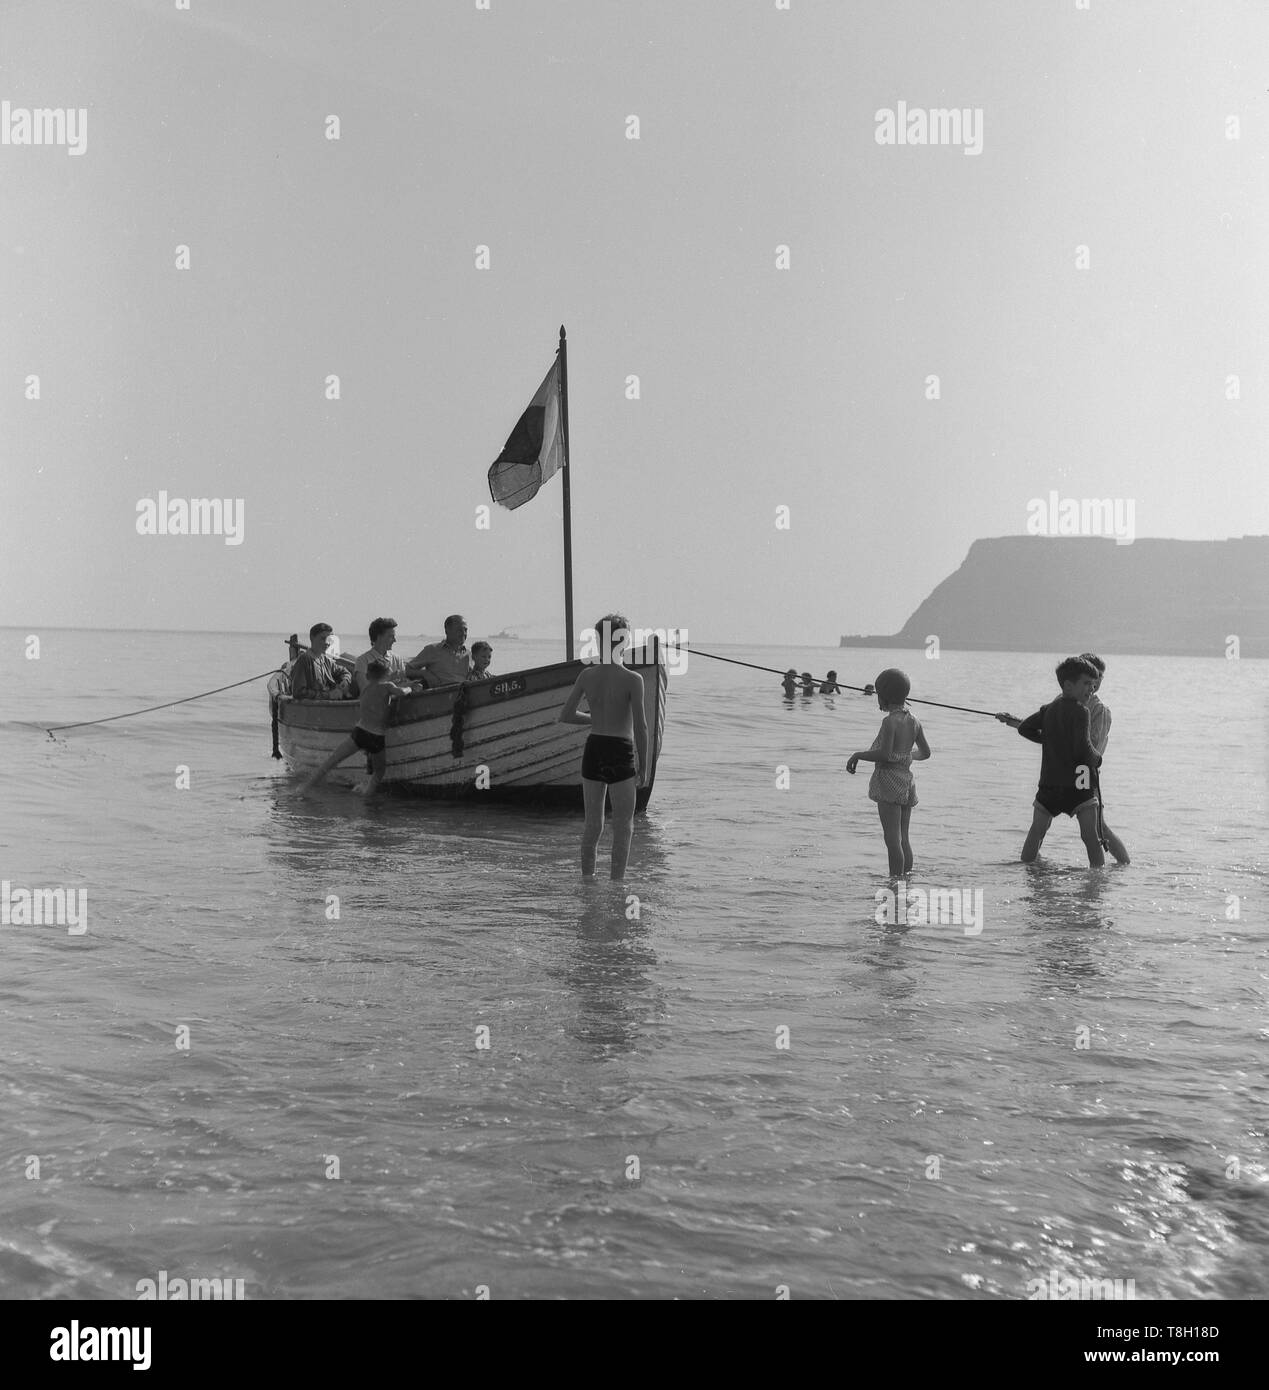 Années 1950, historique, bateau à rames dans l'eau peu profonde par le bord de la mer, les jeunes garçons tenant une corde pour tirer le bateau vers la rive, England, UK. Banque D'Images